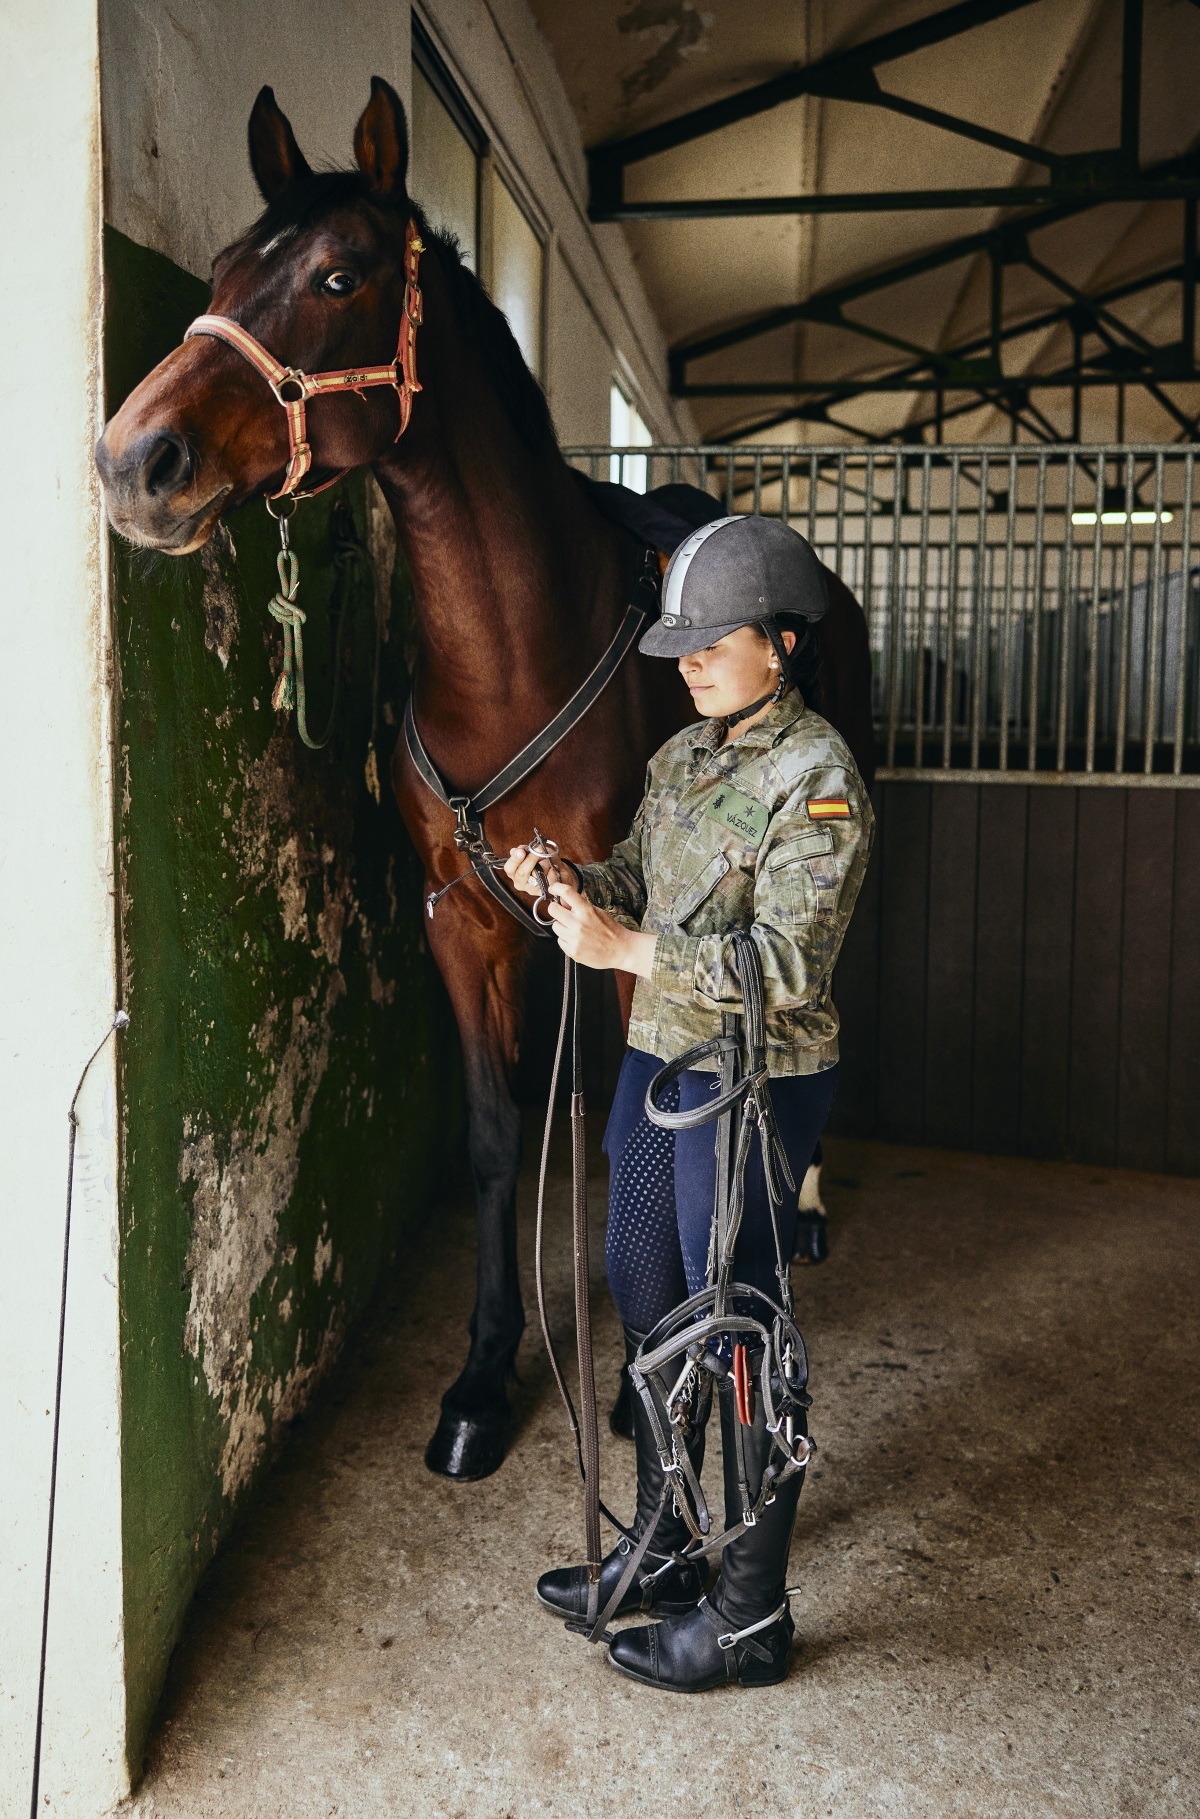 La dama cadete de 3er curso, Elena Martínez Vázquez, en las cuadras poniendo las bridas a su caballo de saltos. Lleva la chaqueta de instrucción o "mimeta" y el pelo recogido en una trenza.